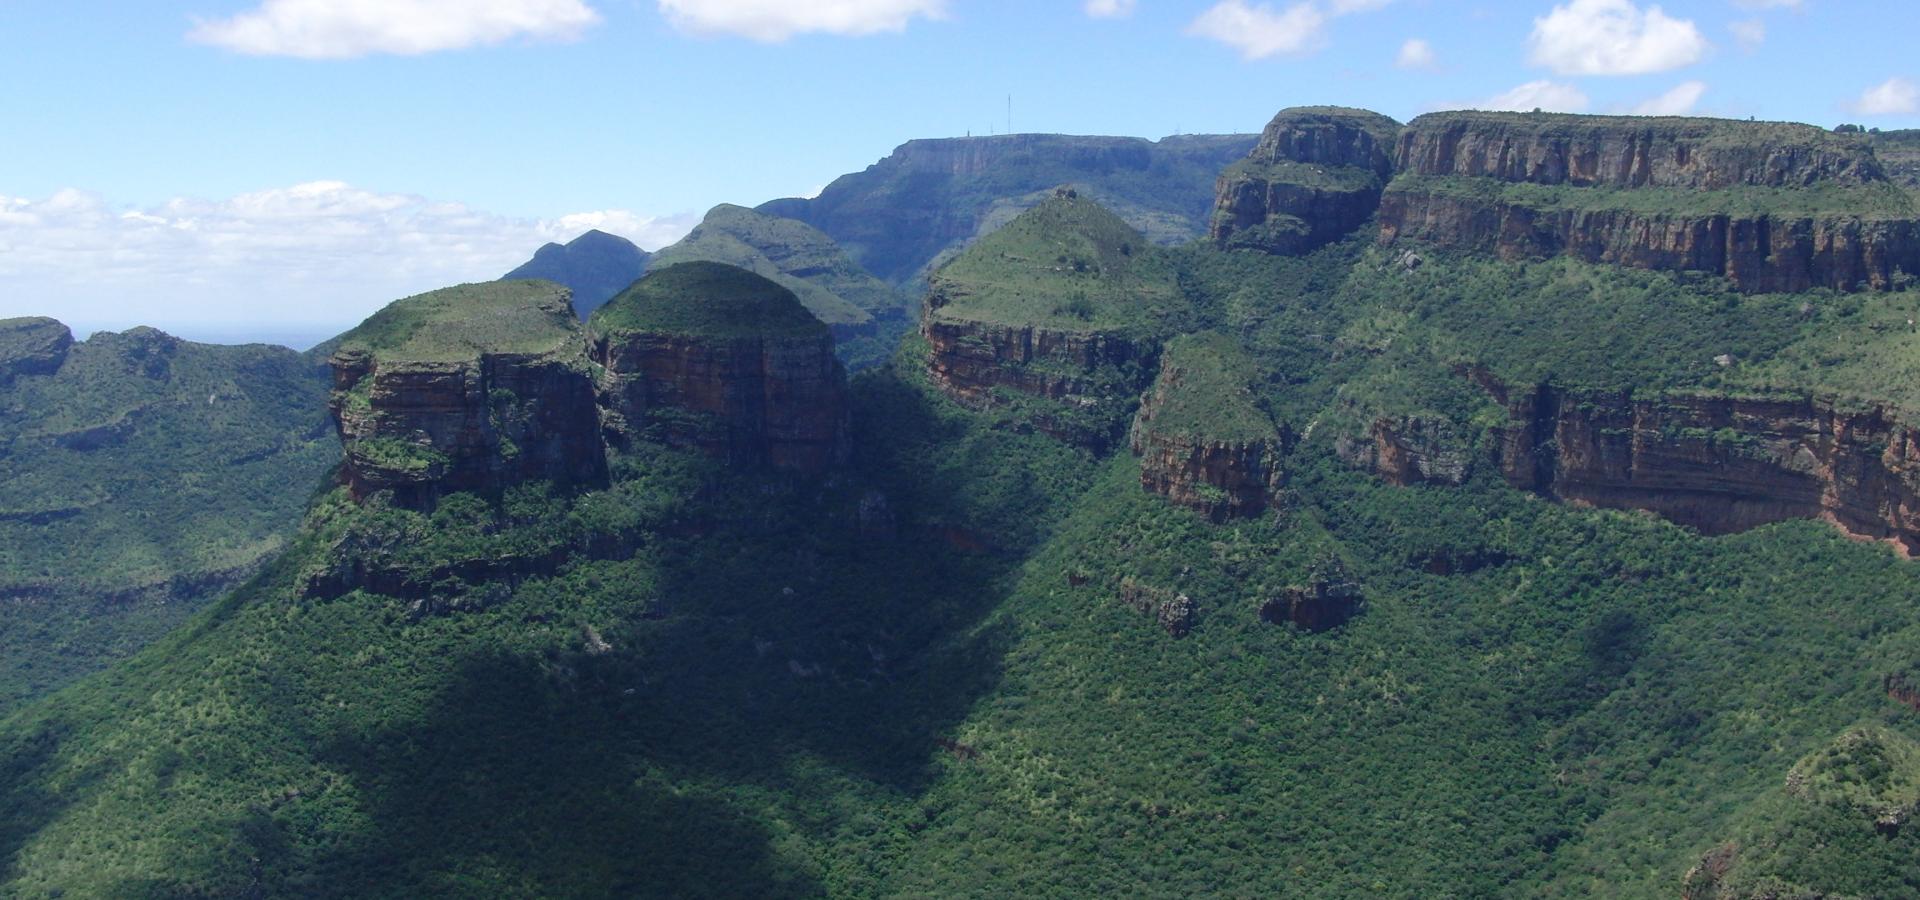 Erleben Sie die majestätische Schönheit des Blyde River Canyons in Südafrika